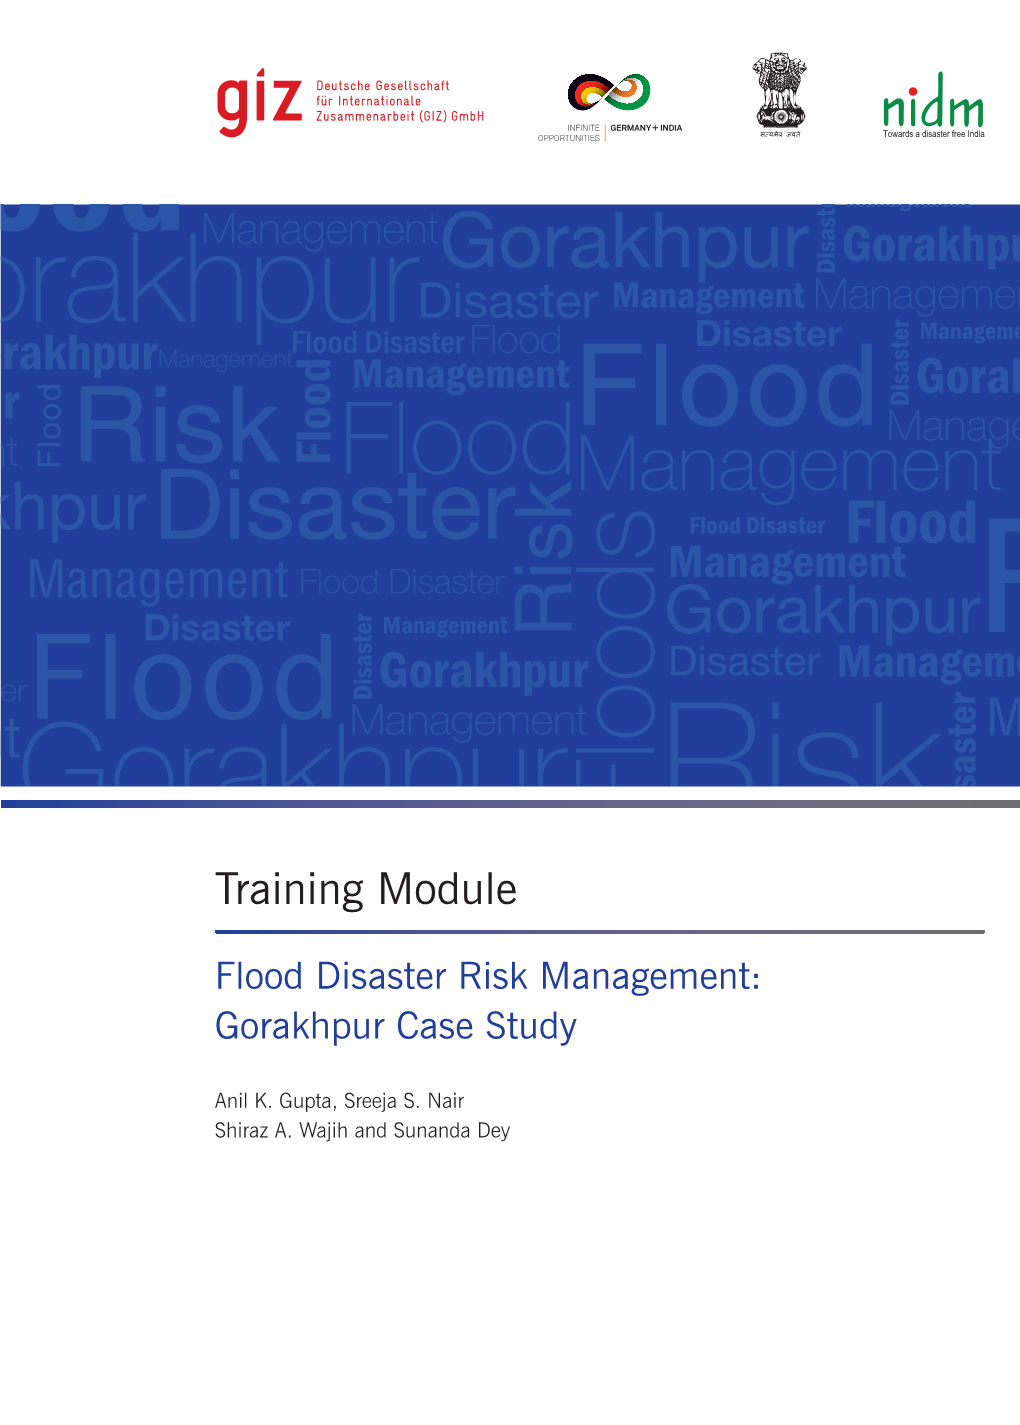 Flood Disaster Risk Management – Gorakhpur Case Study